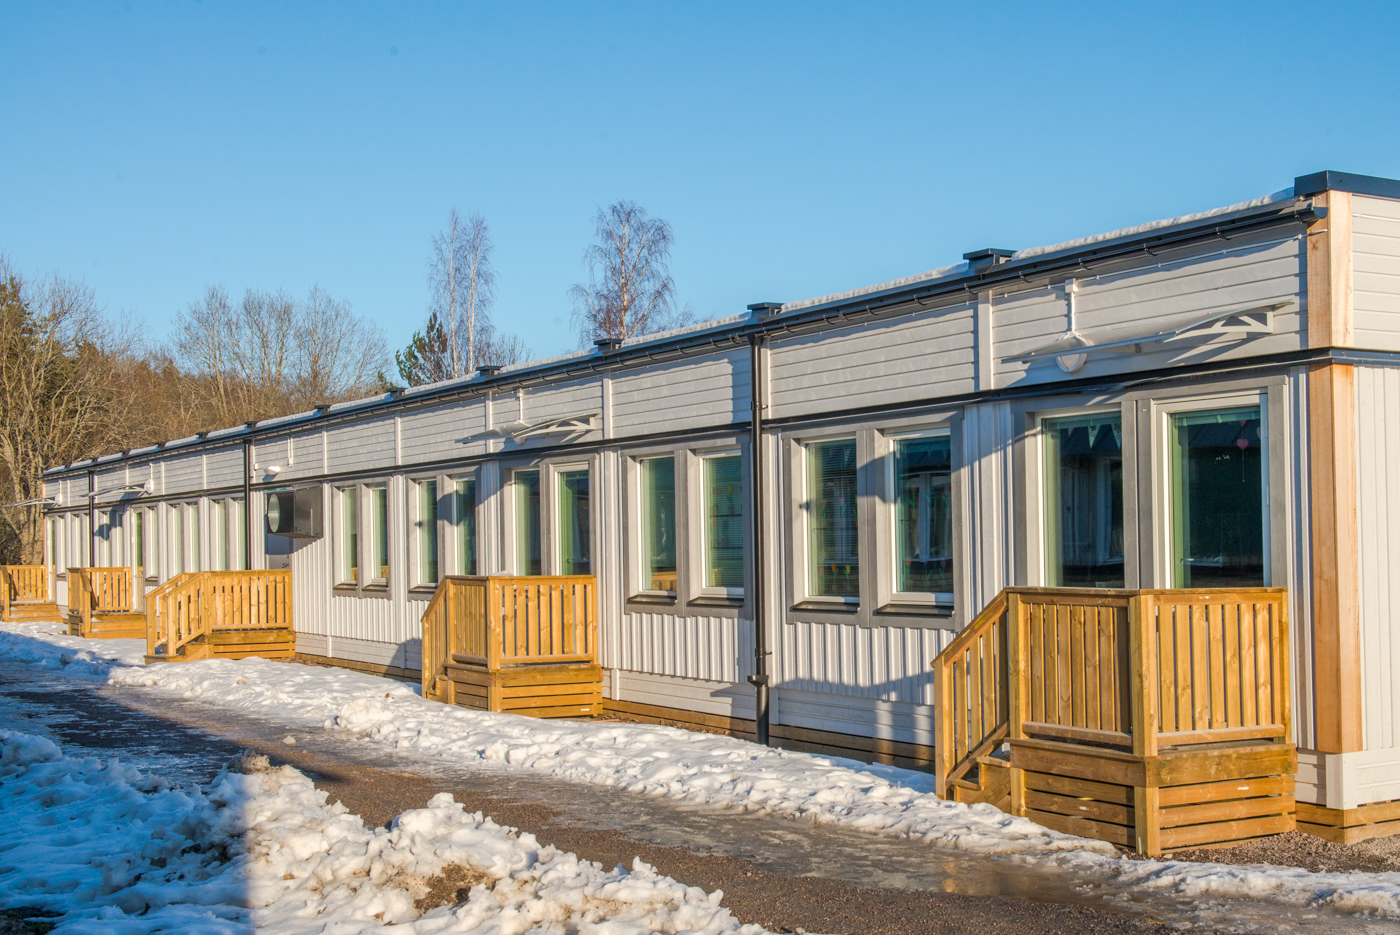 Irstaskolan 10 km öster om Västerås centrum fick under sommaren 2017 två nya skollokaler som tillsammans rymmer hela sju nya klassrum.